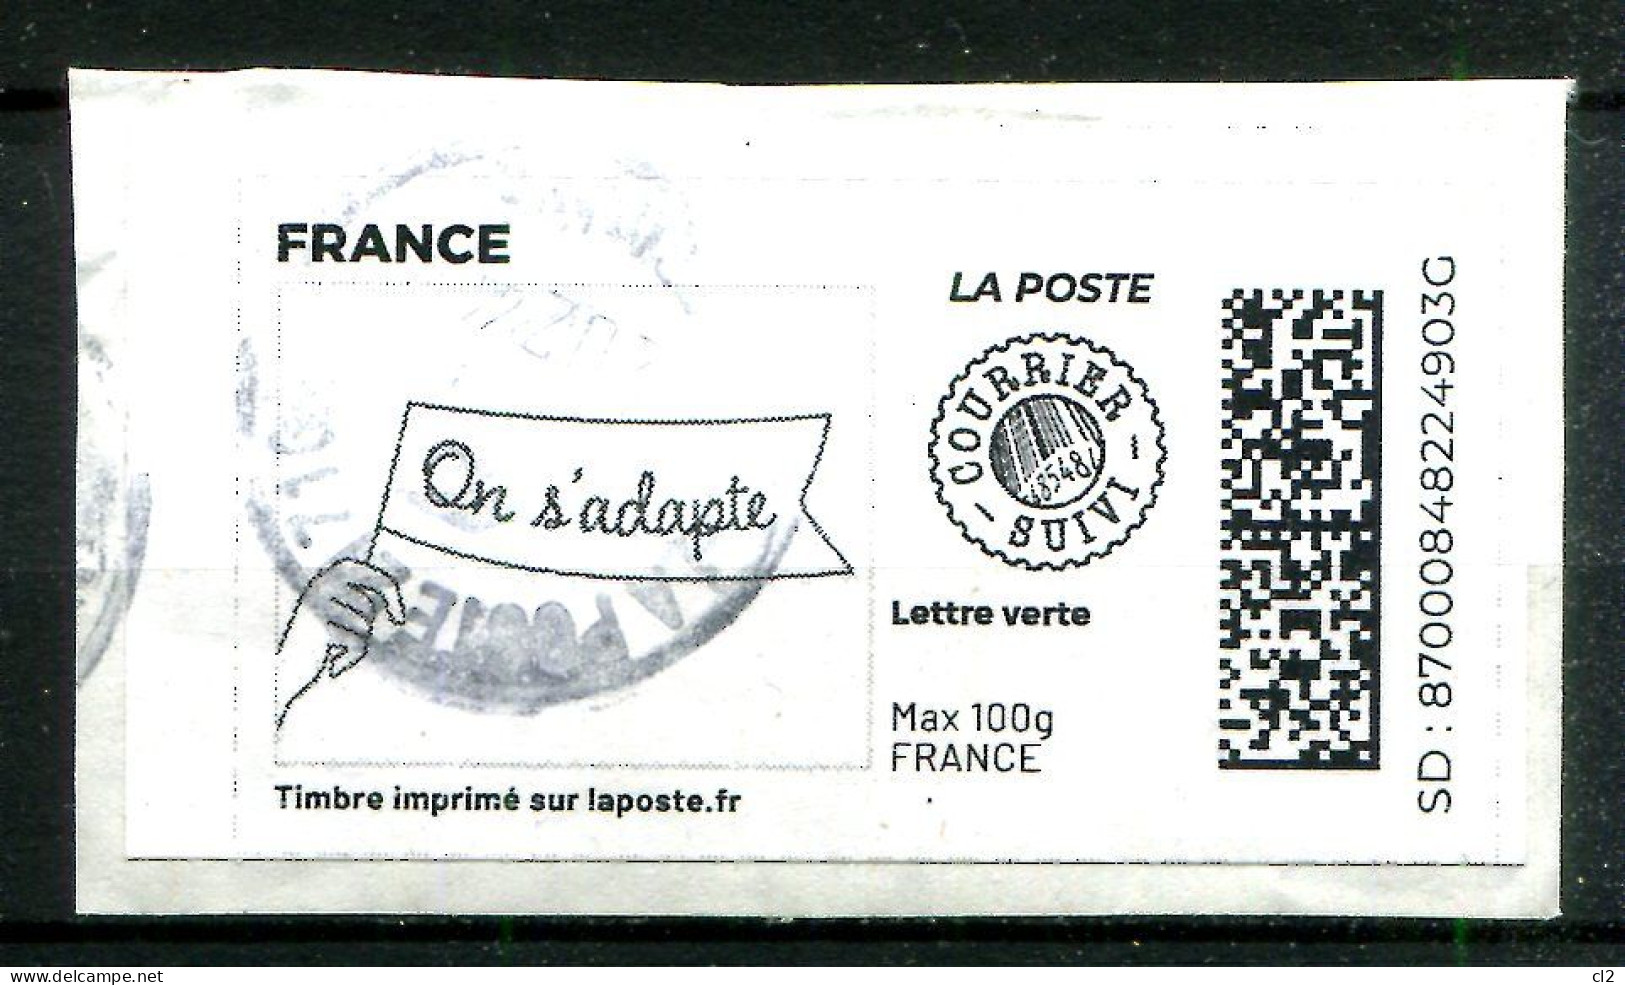 FRANCE - Timbre à Imprimer - Lettre Verte Suivie Max 100g - On S'adapte - Timbres à Imprimer (Montimbrenligne)